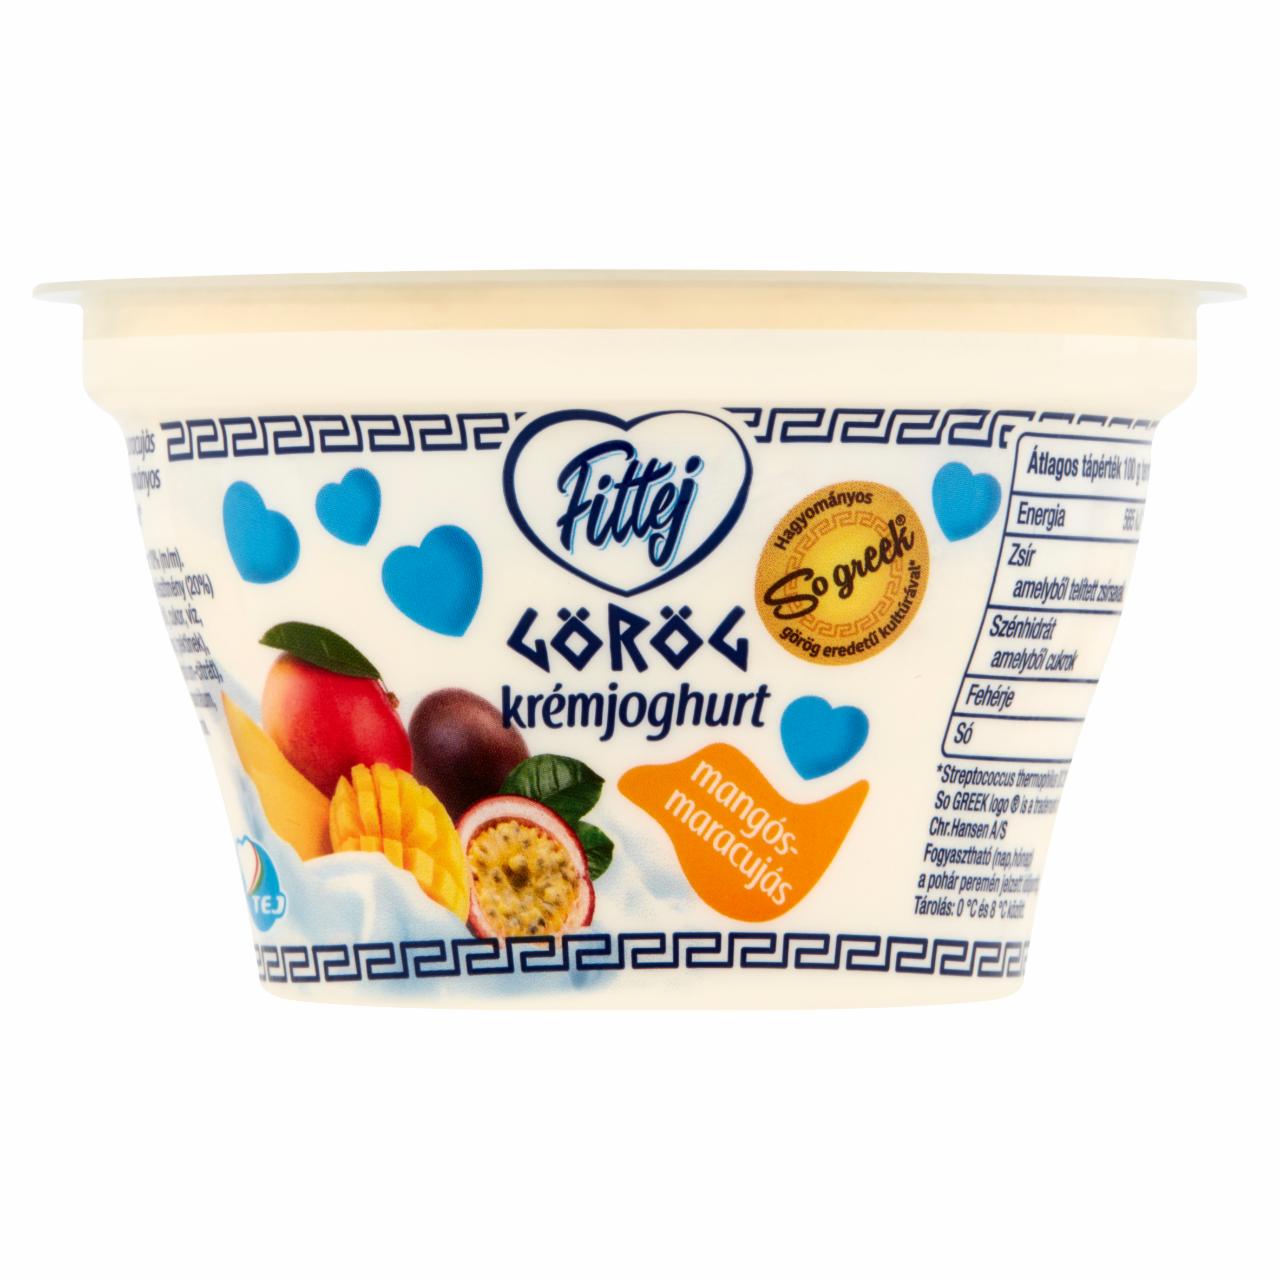 Képek - Fittej mangós-maracujás görög krémjoghurt 150 g